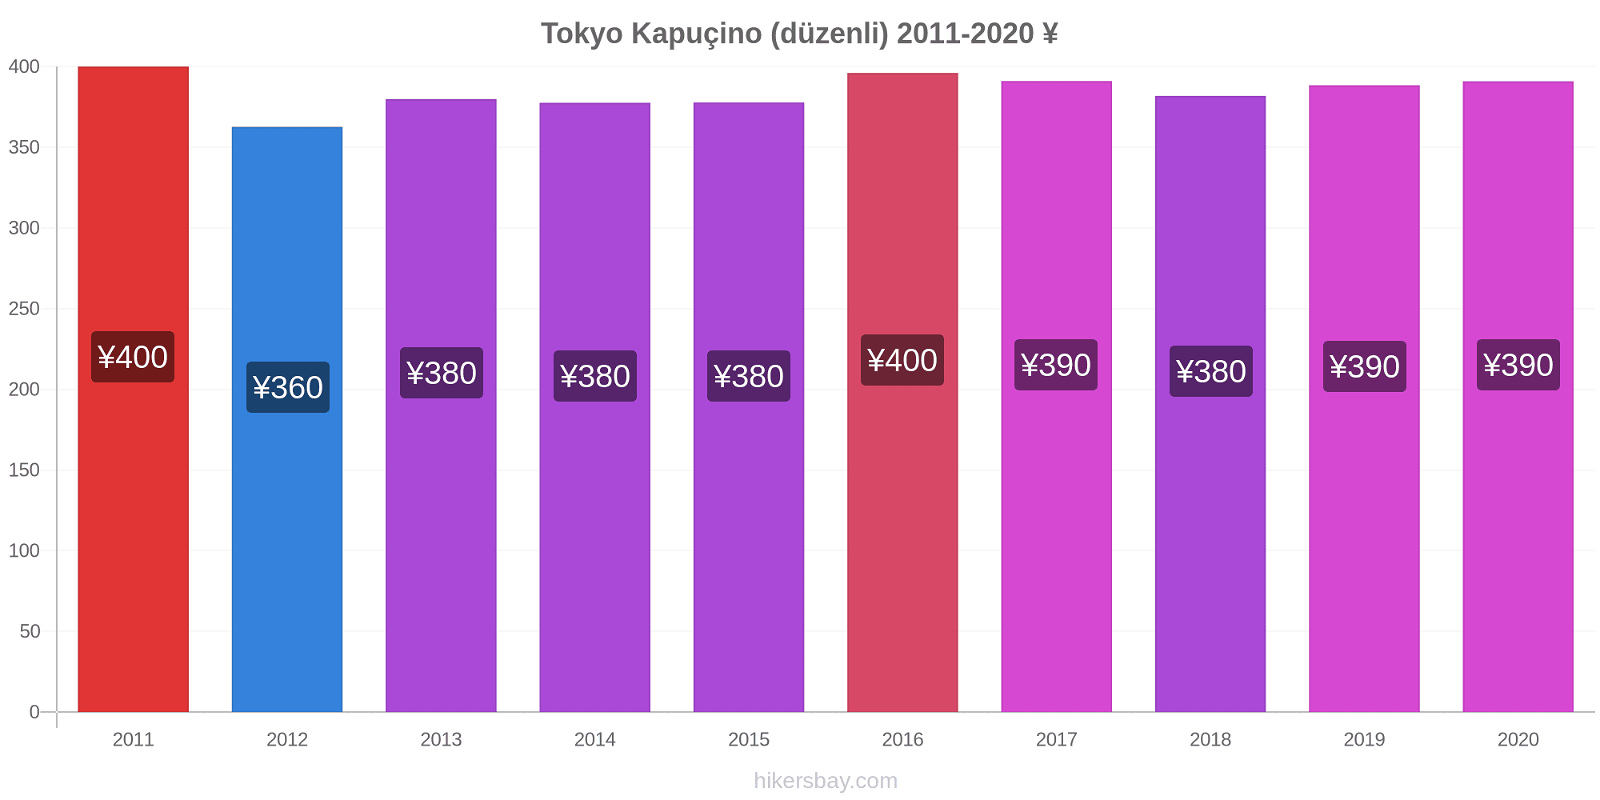 Tokyo fiyat değişiklikleri Kapuçino (düzenli) hikersbay.com